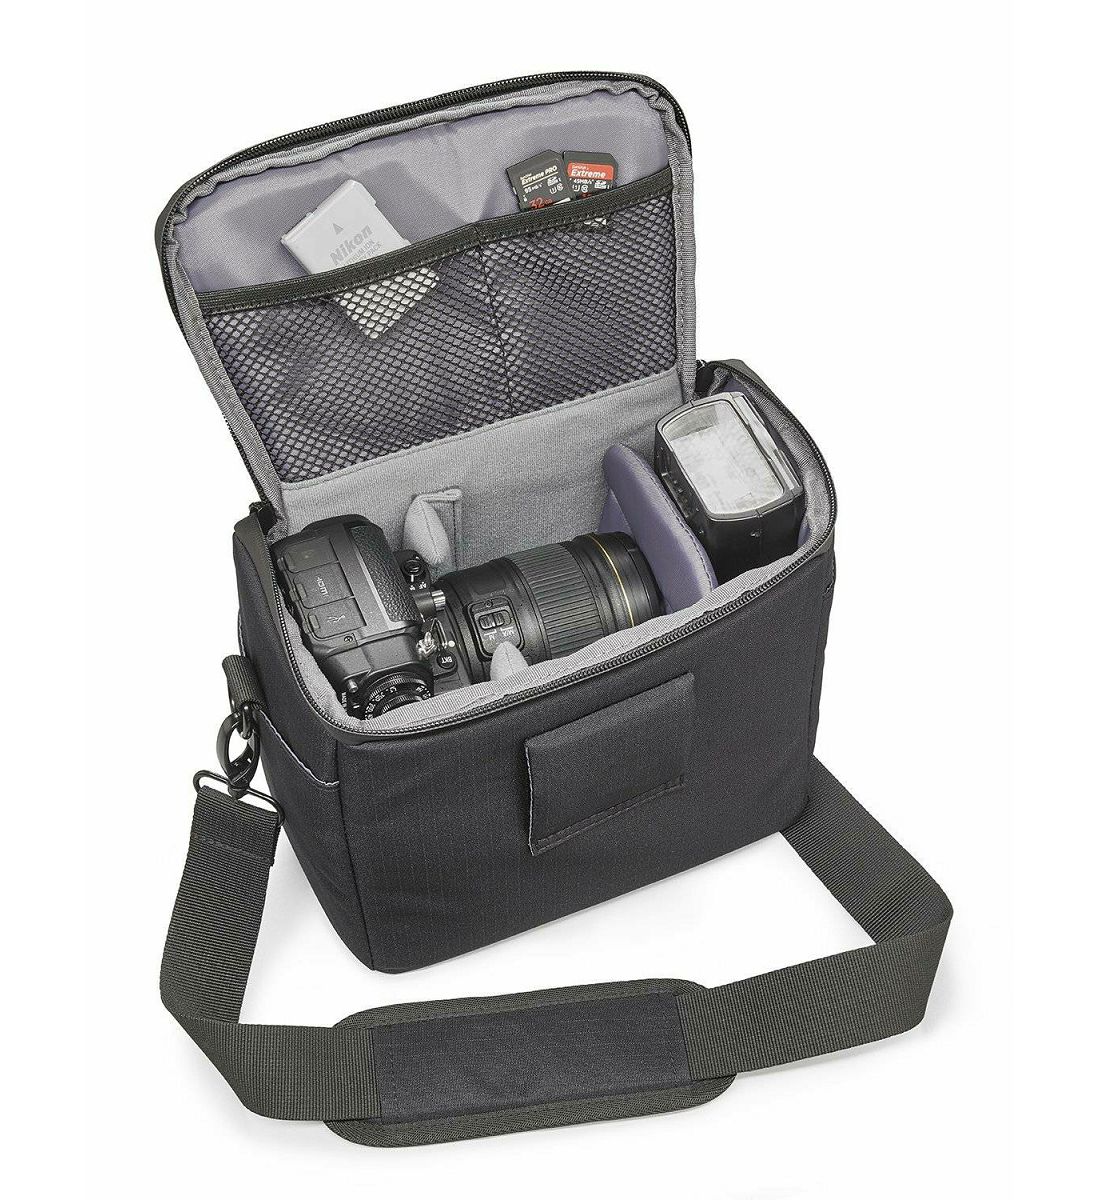 Cullmann Malaga Maxima 120 Brown smeđa torba za DSLR fotoaparat i foto opremu 200x160x120mm 355g (90381)